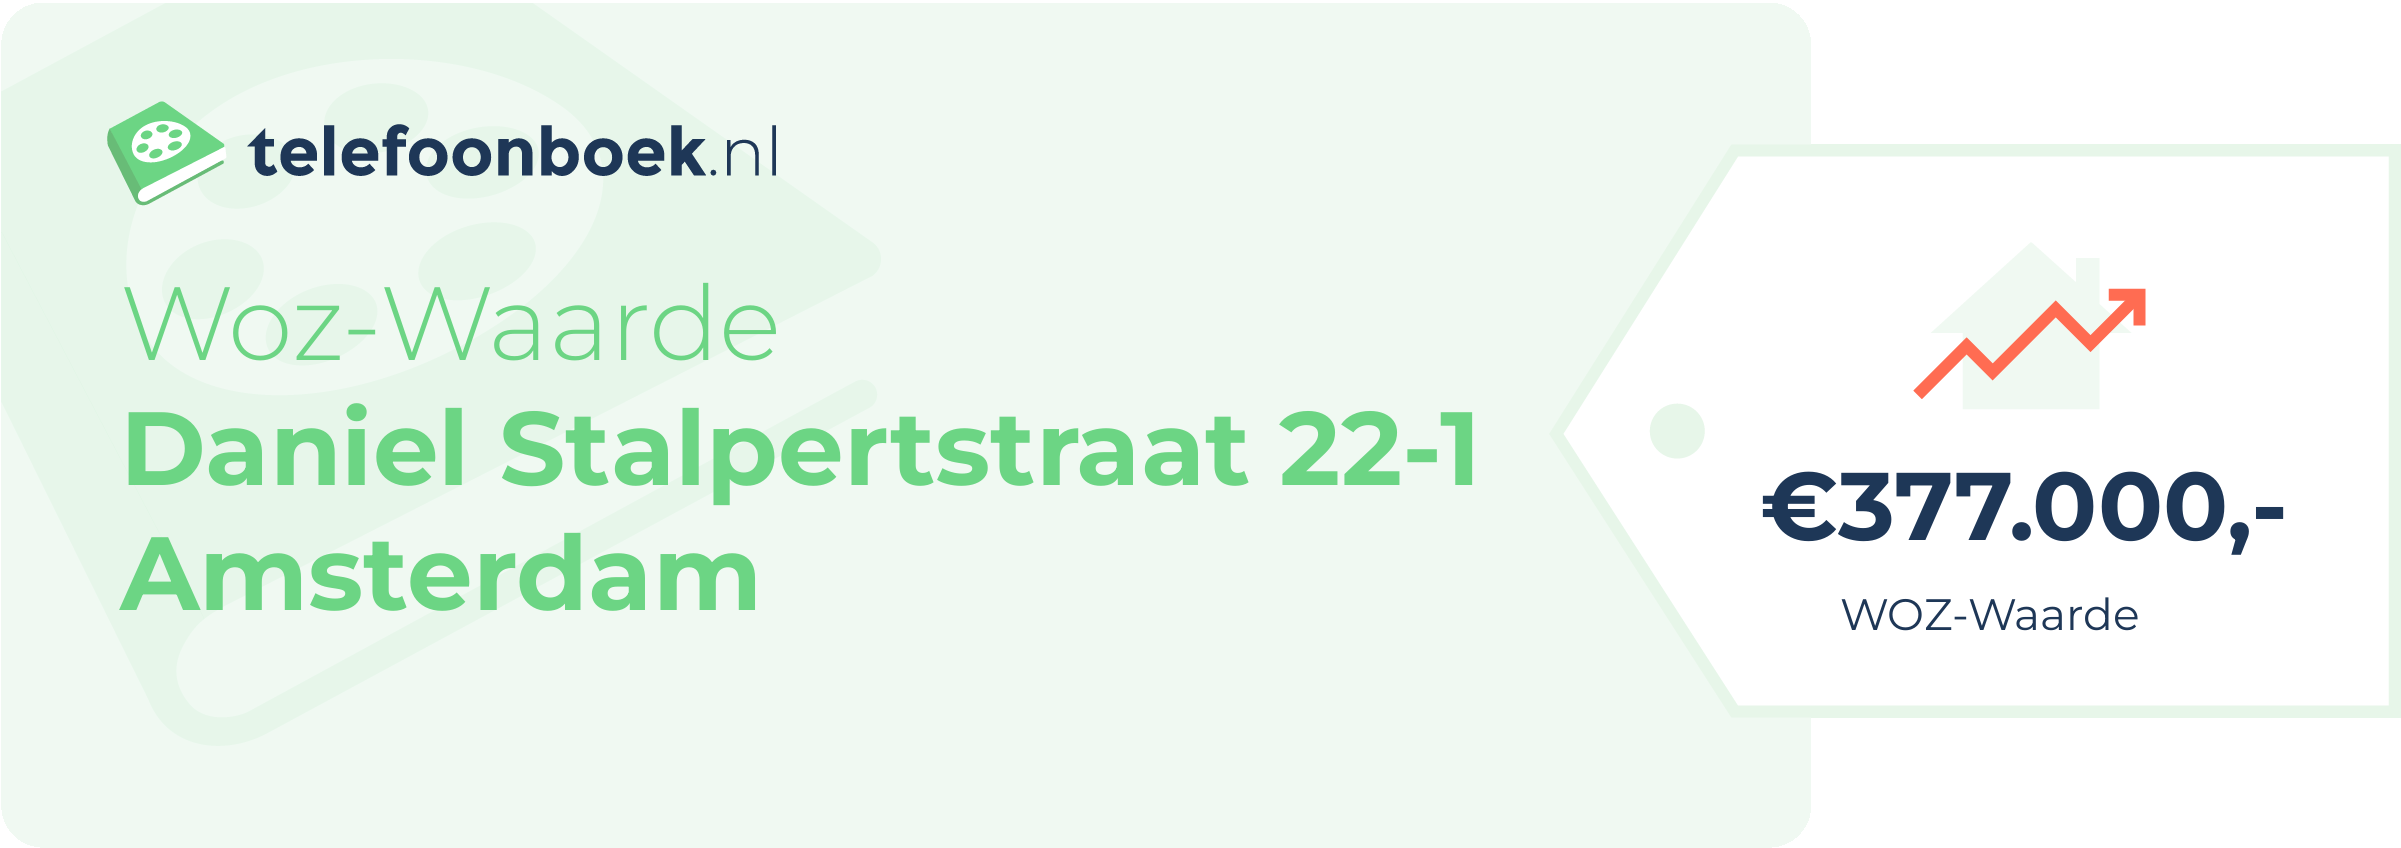 WOZ-waarde Daniel Stalpertstraat 22-1 Amsterdam